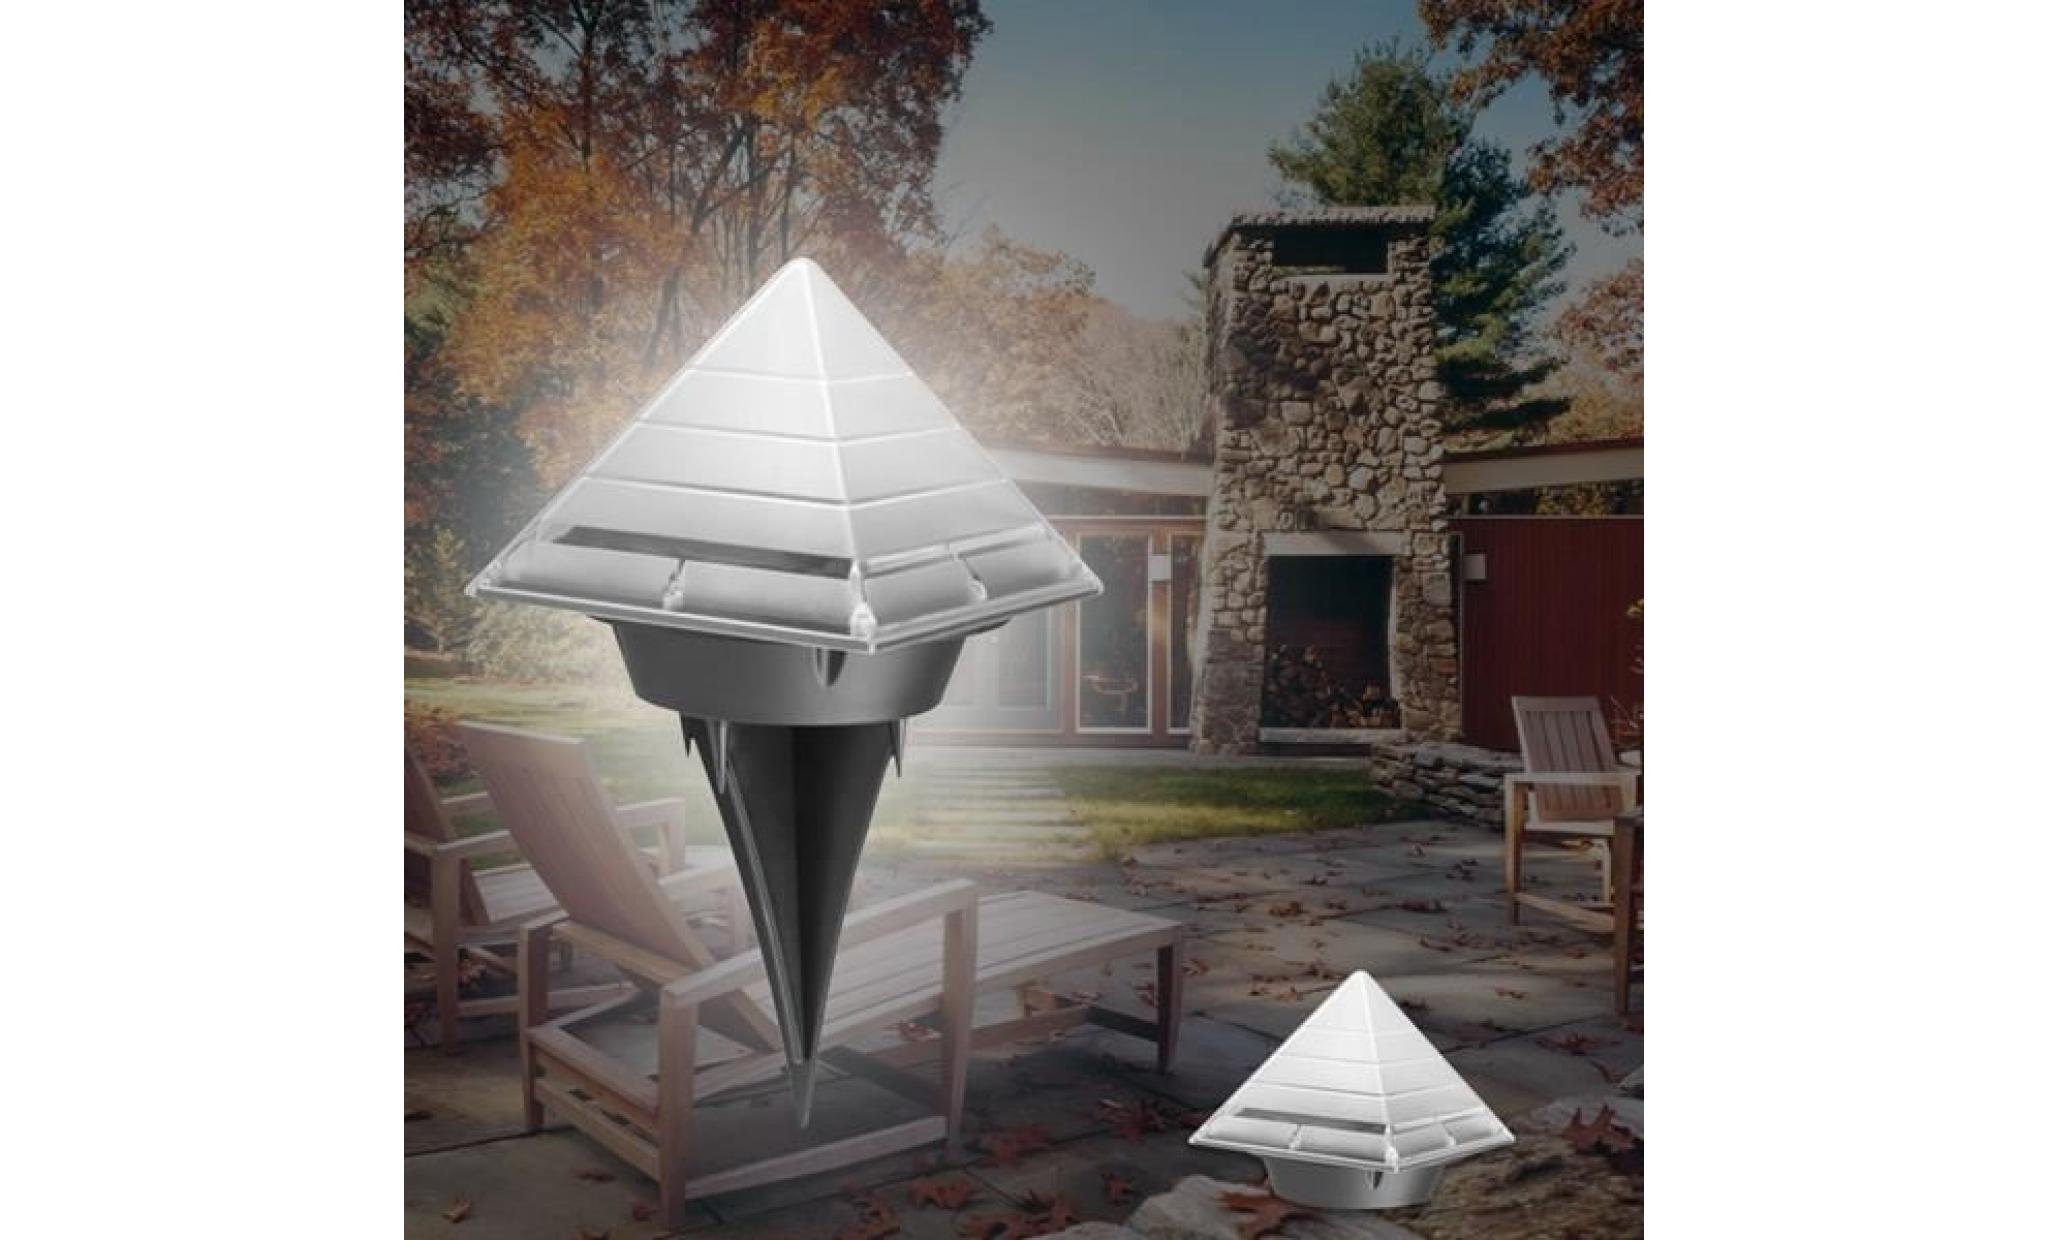 tempsa balise solaire forme pyramide souterraine de jardin pelouse décor